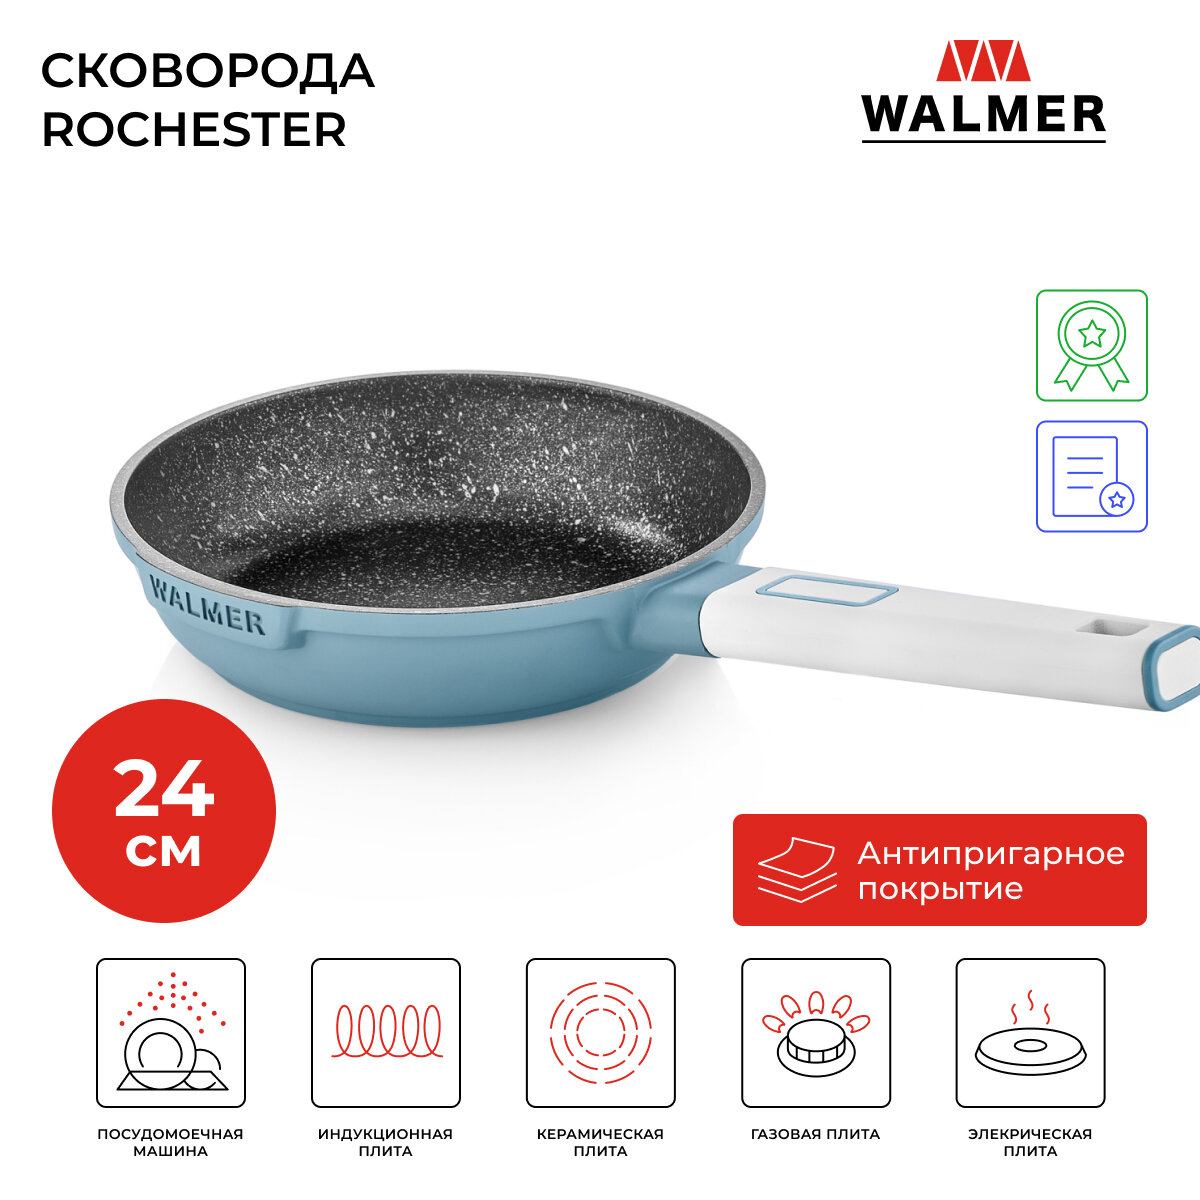 Сковорода с антипригарным покрытием Walmer Rochester, 24 см